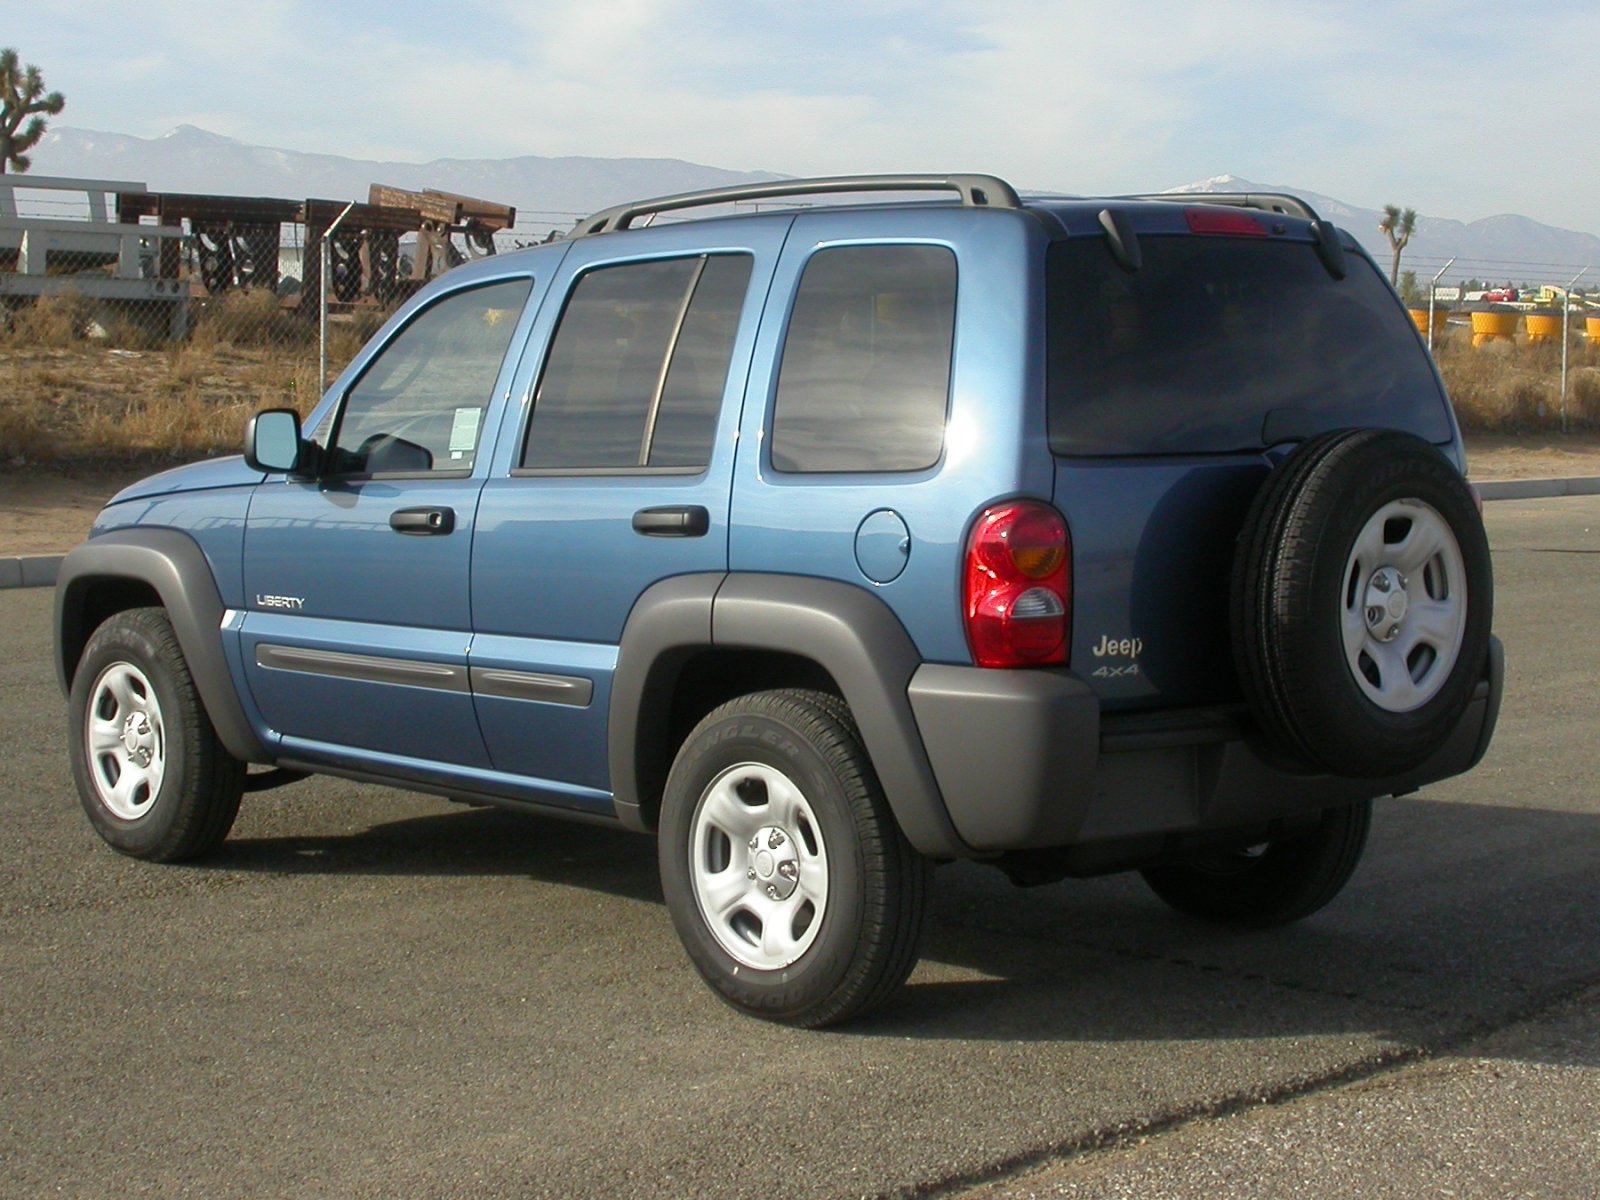 File:2004 Jeep Liberty -- NHTSA 02.jpg - Wikipedia